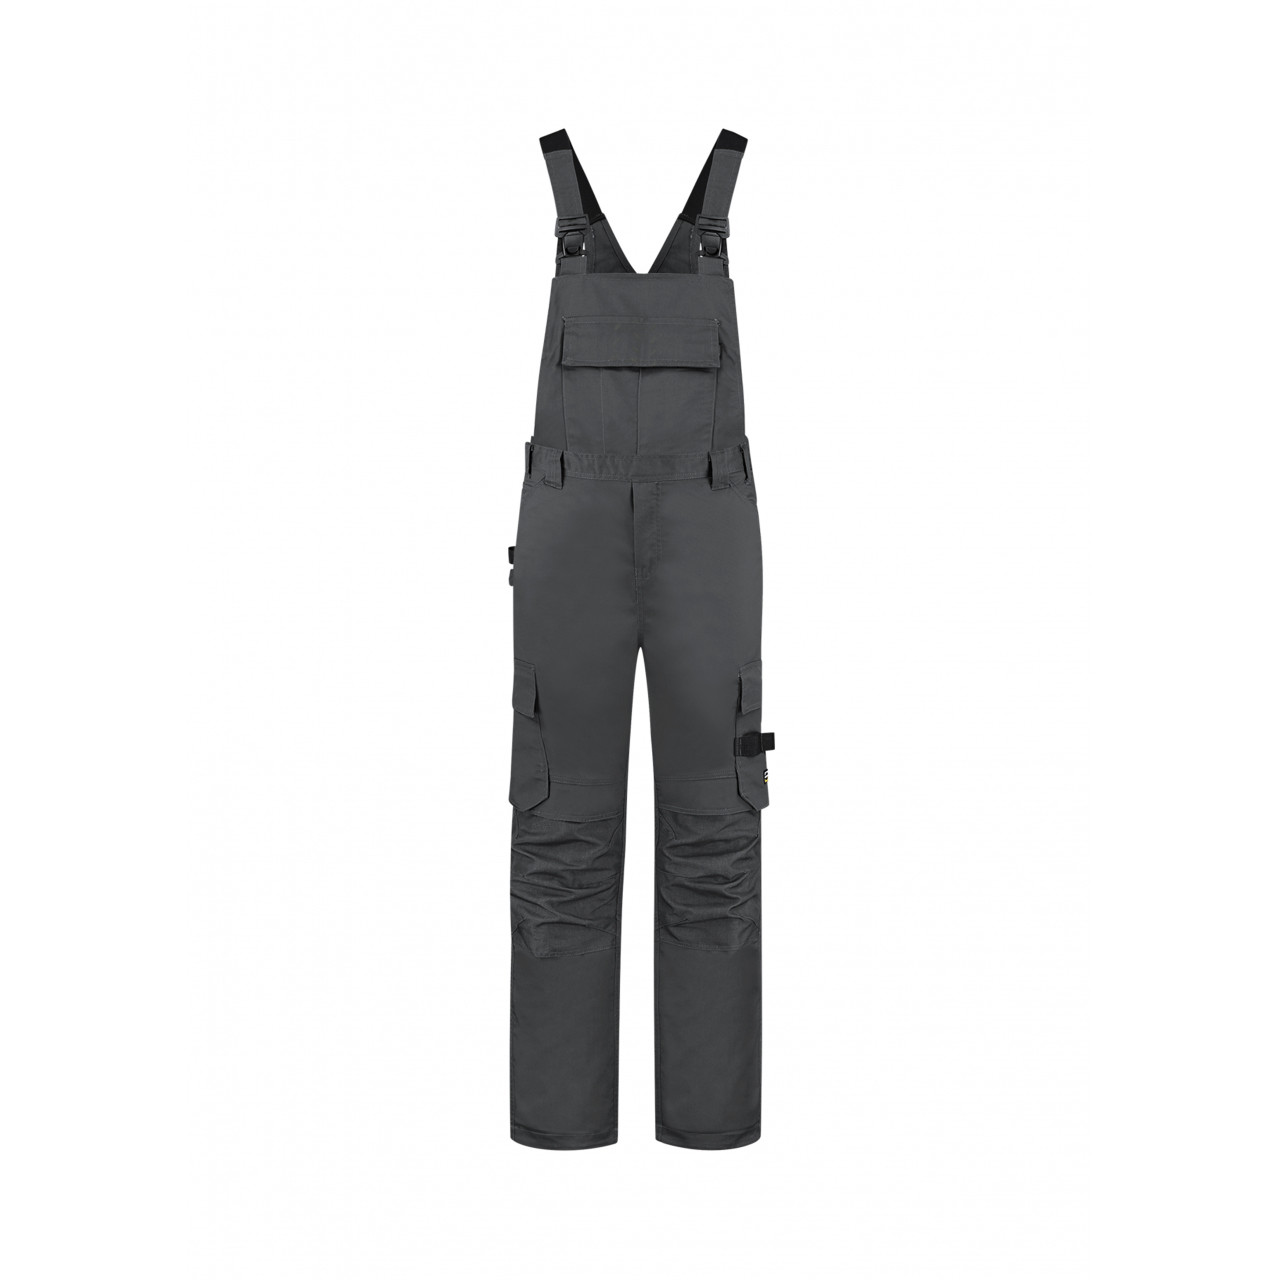 Pracovní kalhoty laclové Tricorp Bib&Brace Twill Cordura - tmavě šedé, 44